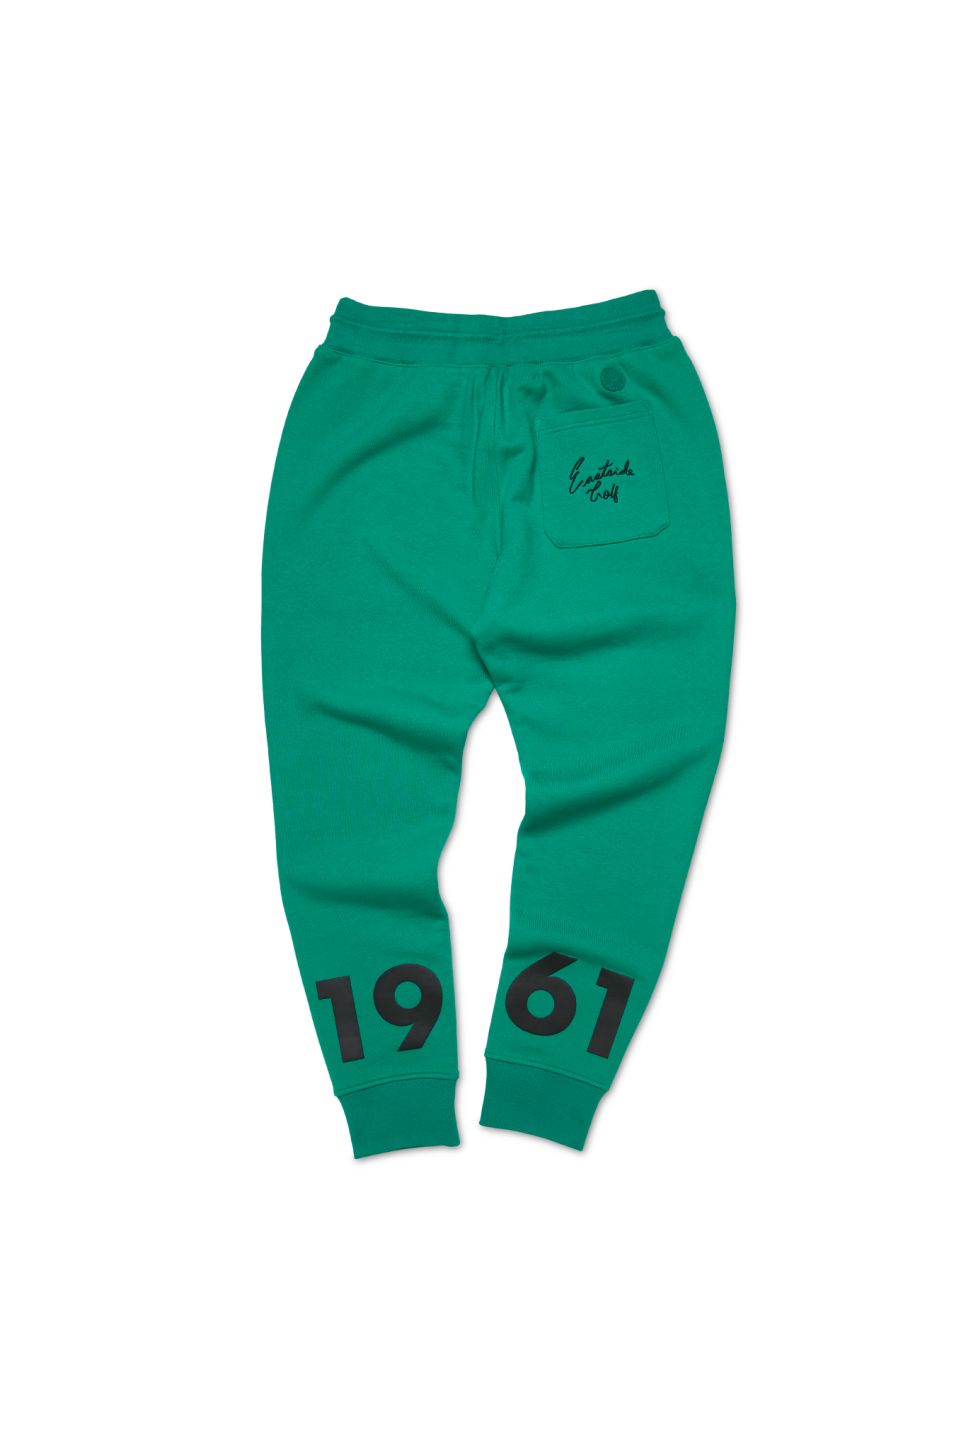 rx-eastsidegolfeastside-golf-mens-1961-change-sweatpant-golf-green.png